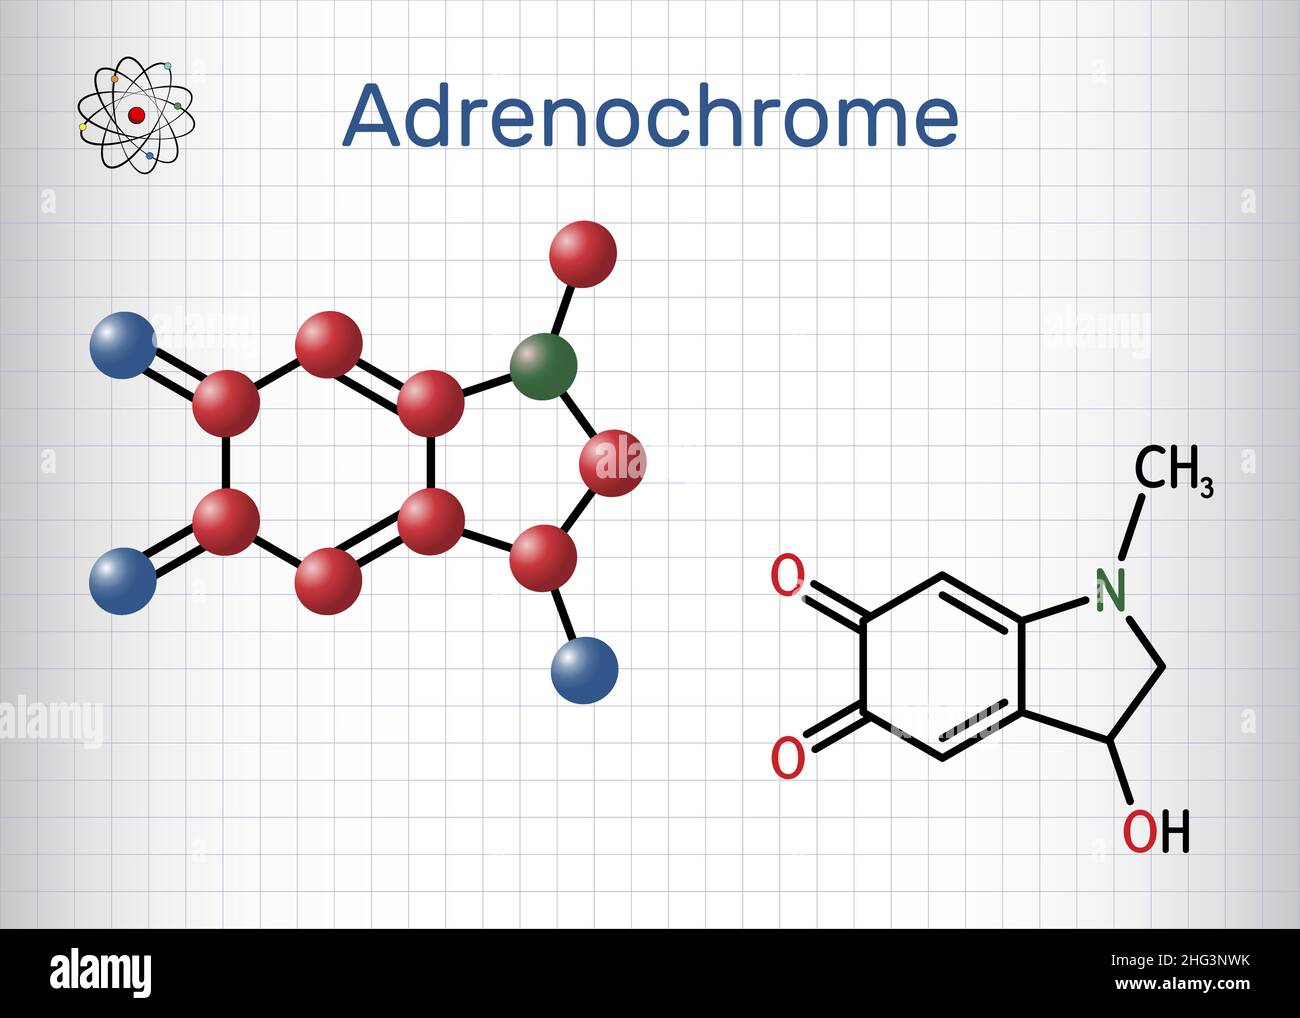 Adrenochrome, Adraxon-Molekül. Es wird durch die Oxidation von Adrenalin produziert. Strukturelle chemische Formel und Molekülmodell. Blatt Papier in einer ca. Stock Vektor